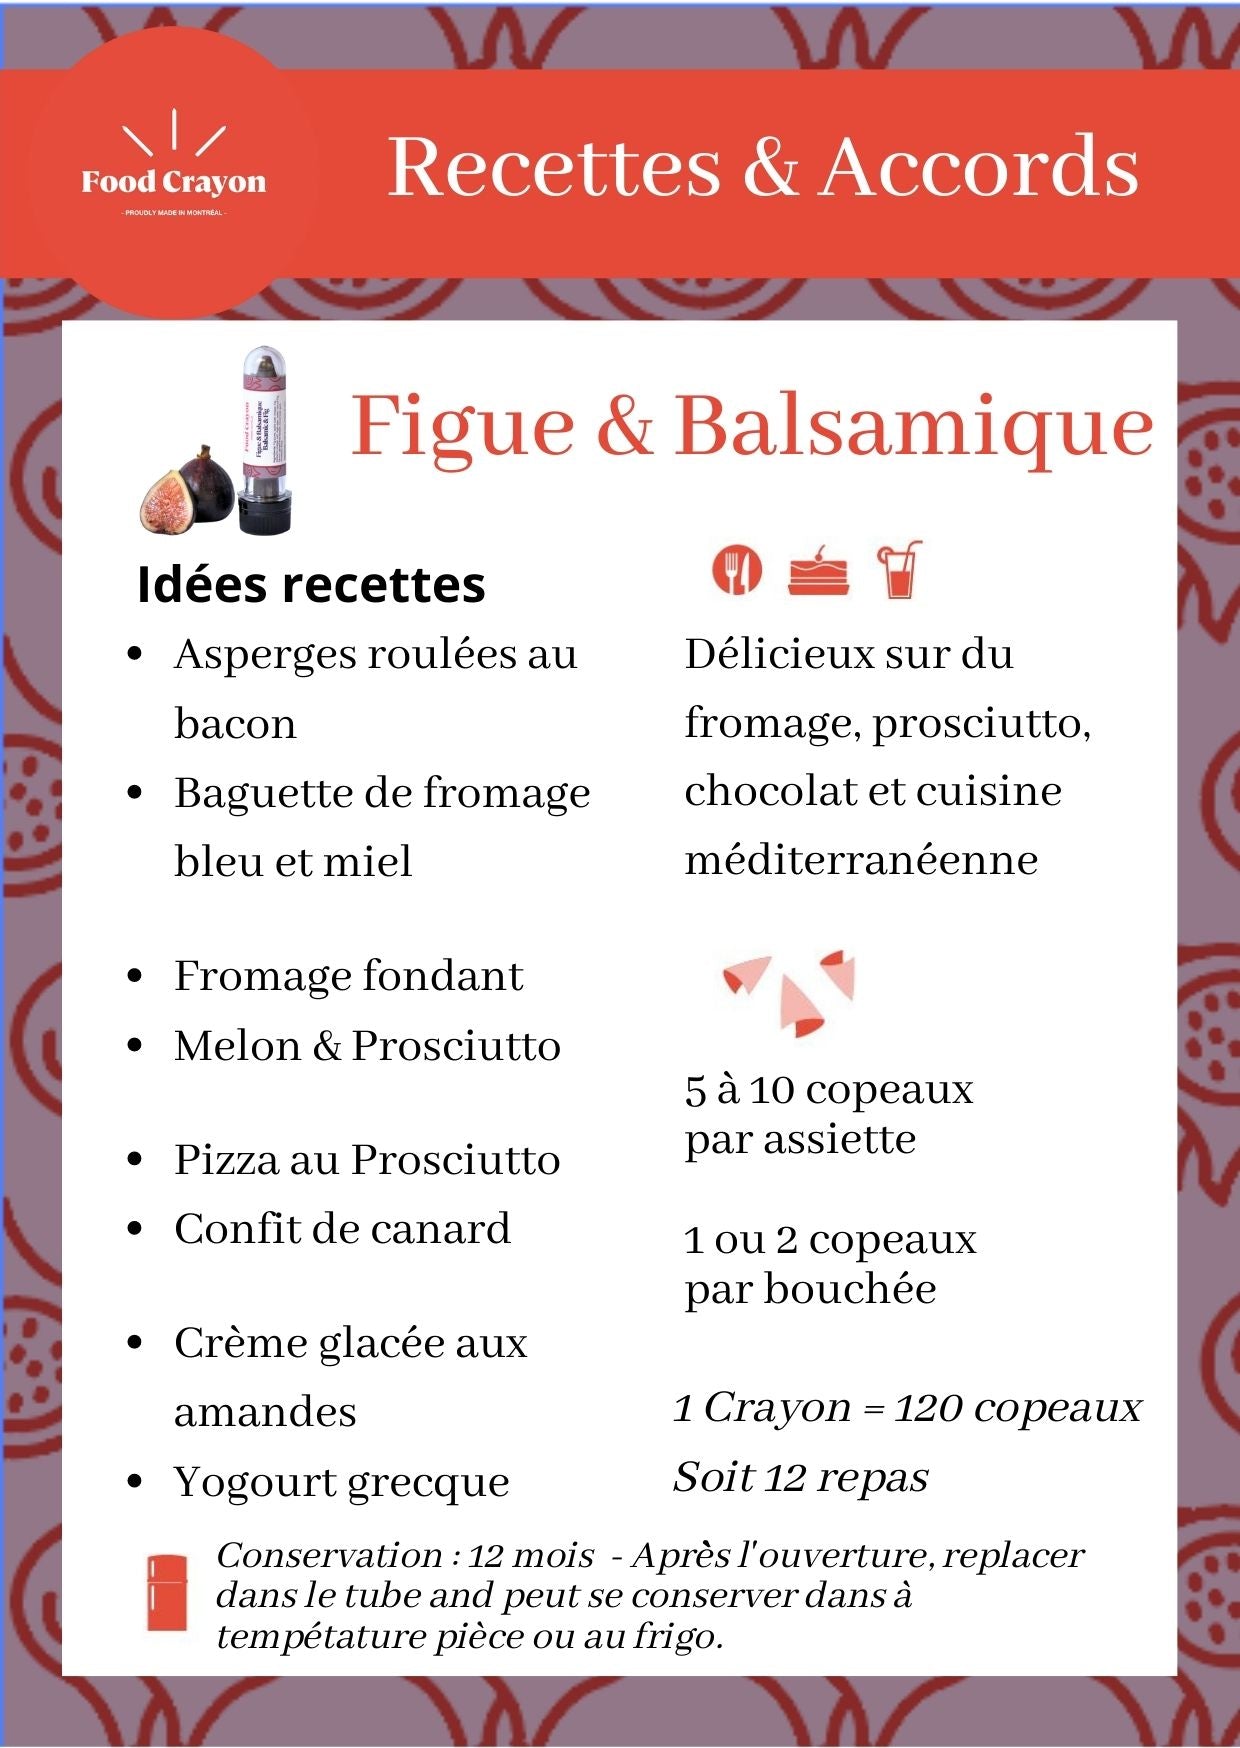 Figue & Balsamique